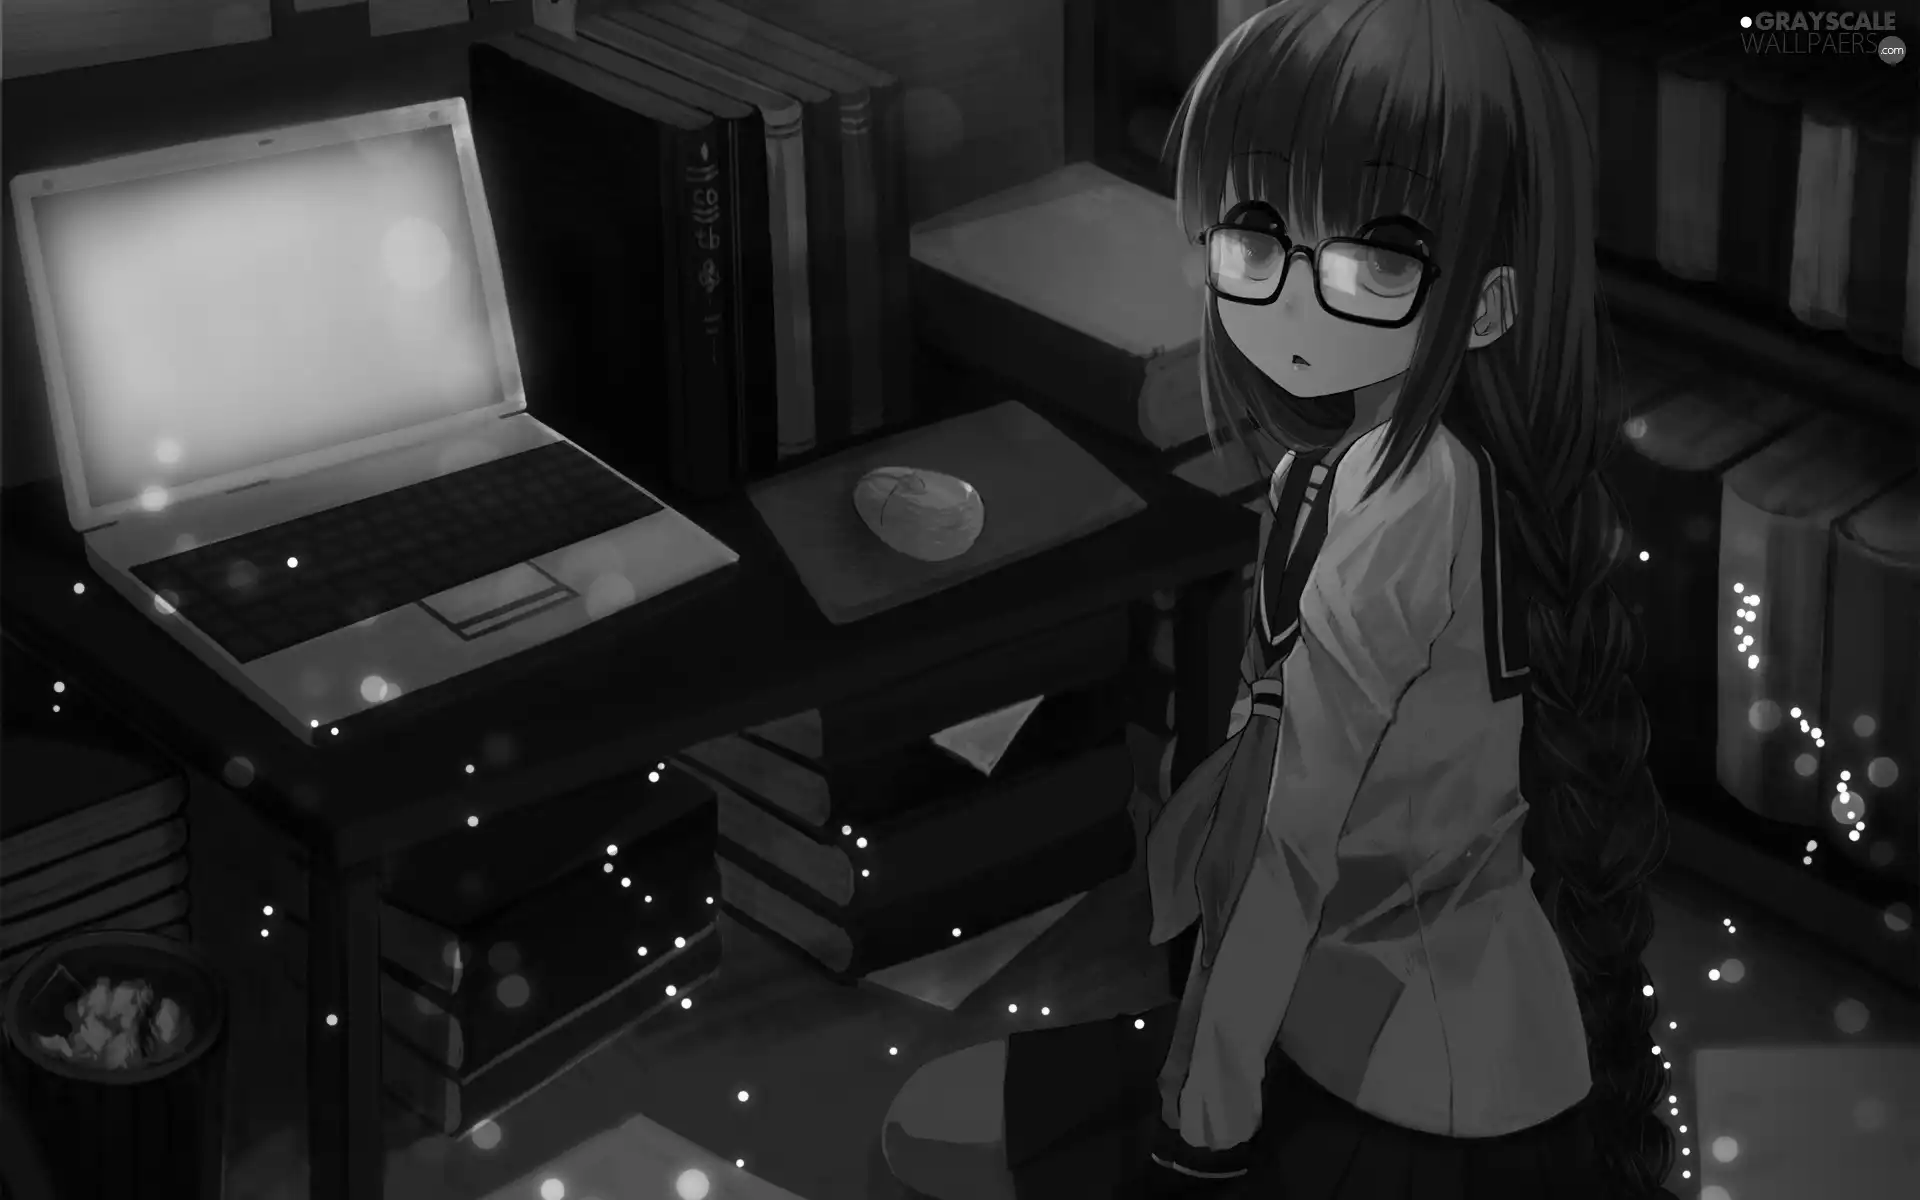 Books, Glasses, desk, Manga, laptop, girl, Room, Anime, basket, mouse